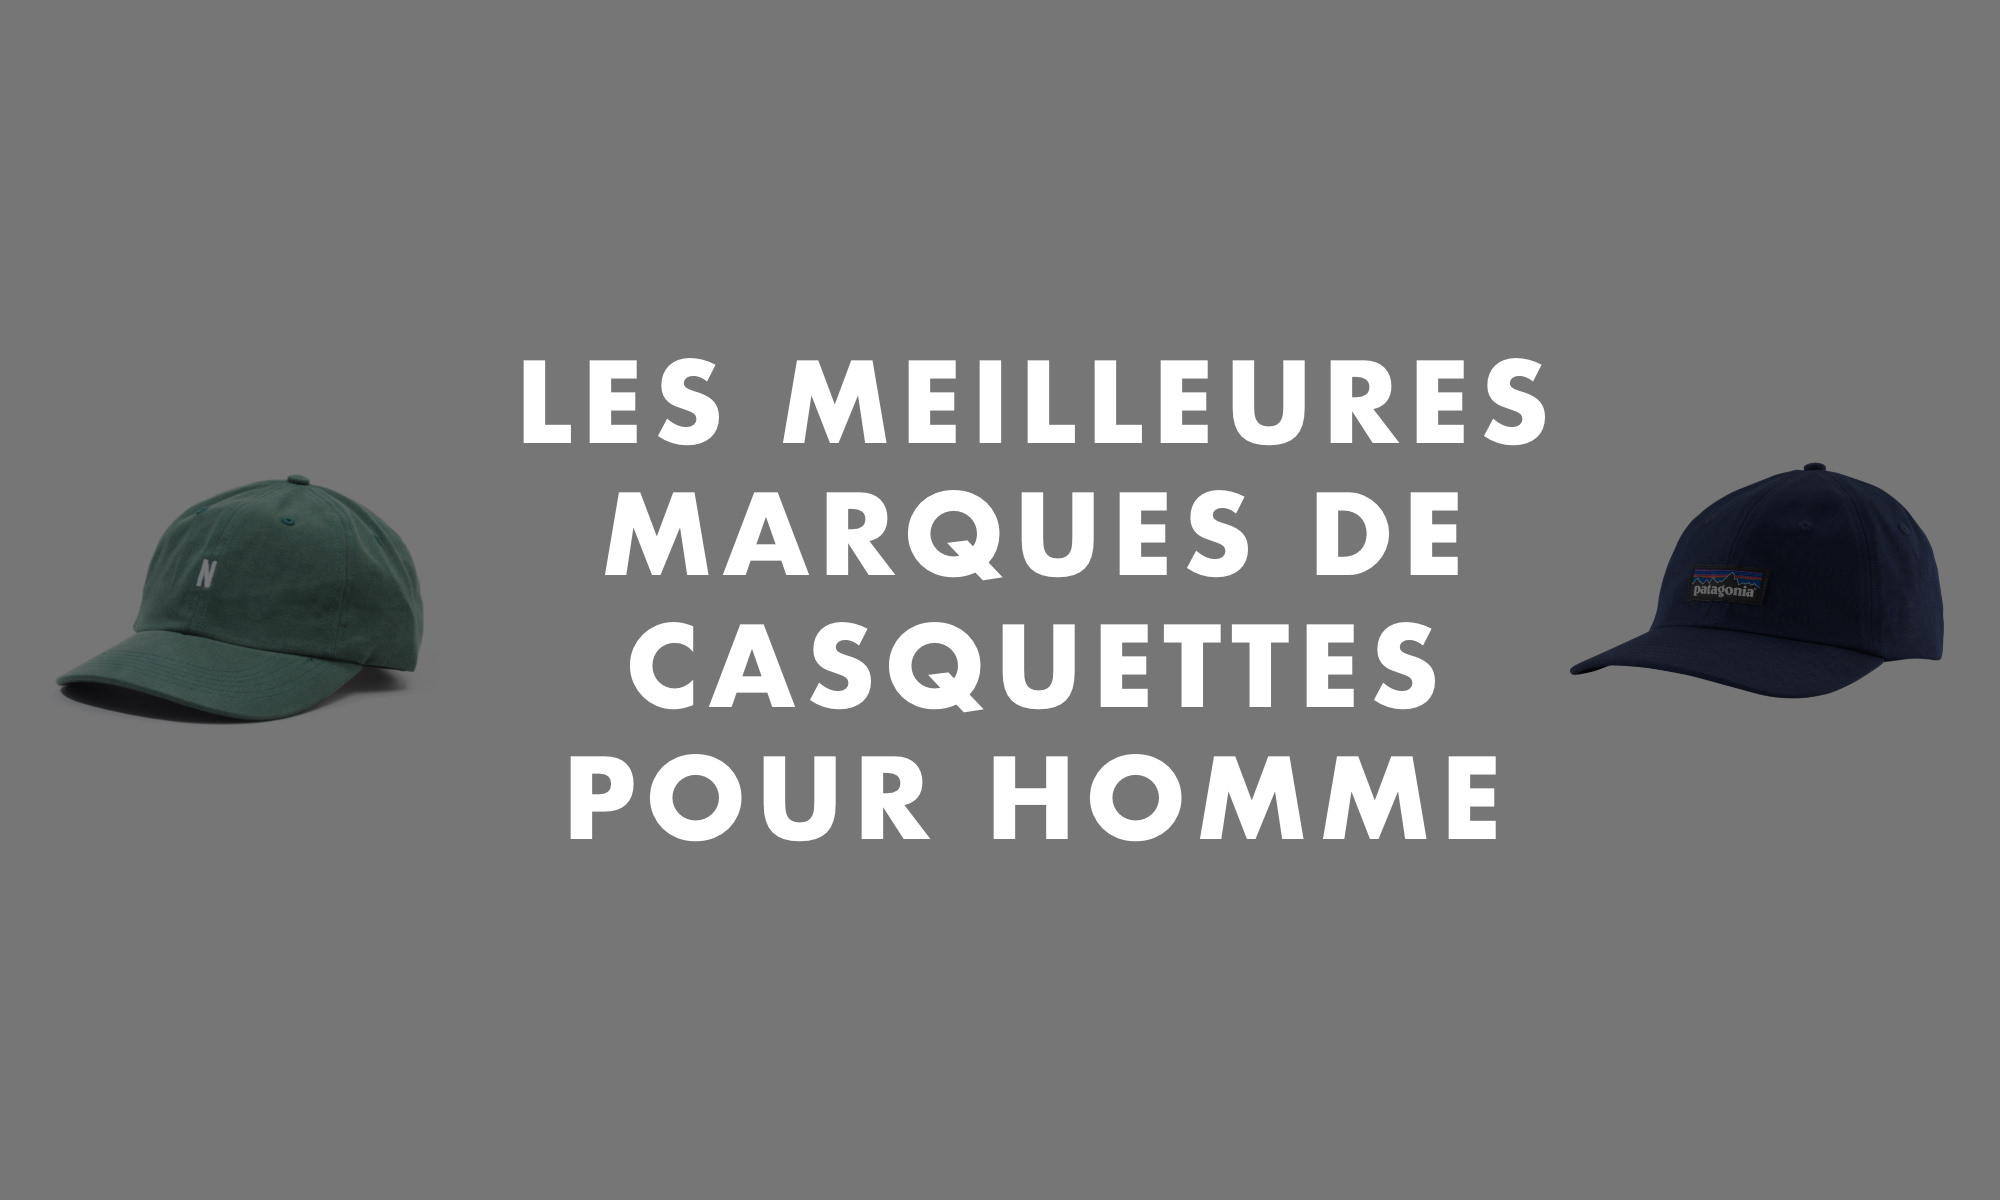 Casquettes Homme : Marques, Tests, Sujets et Avis Mode Homme